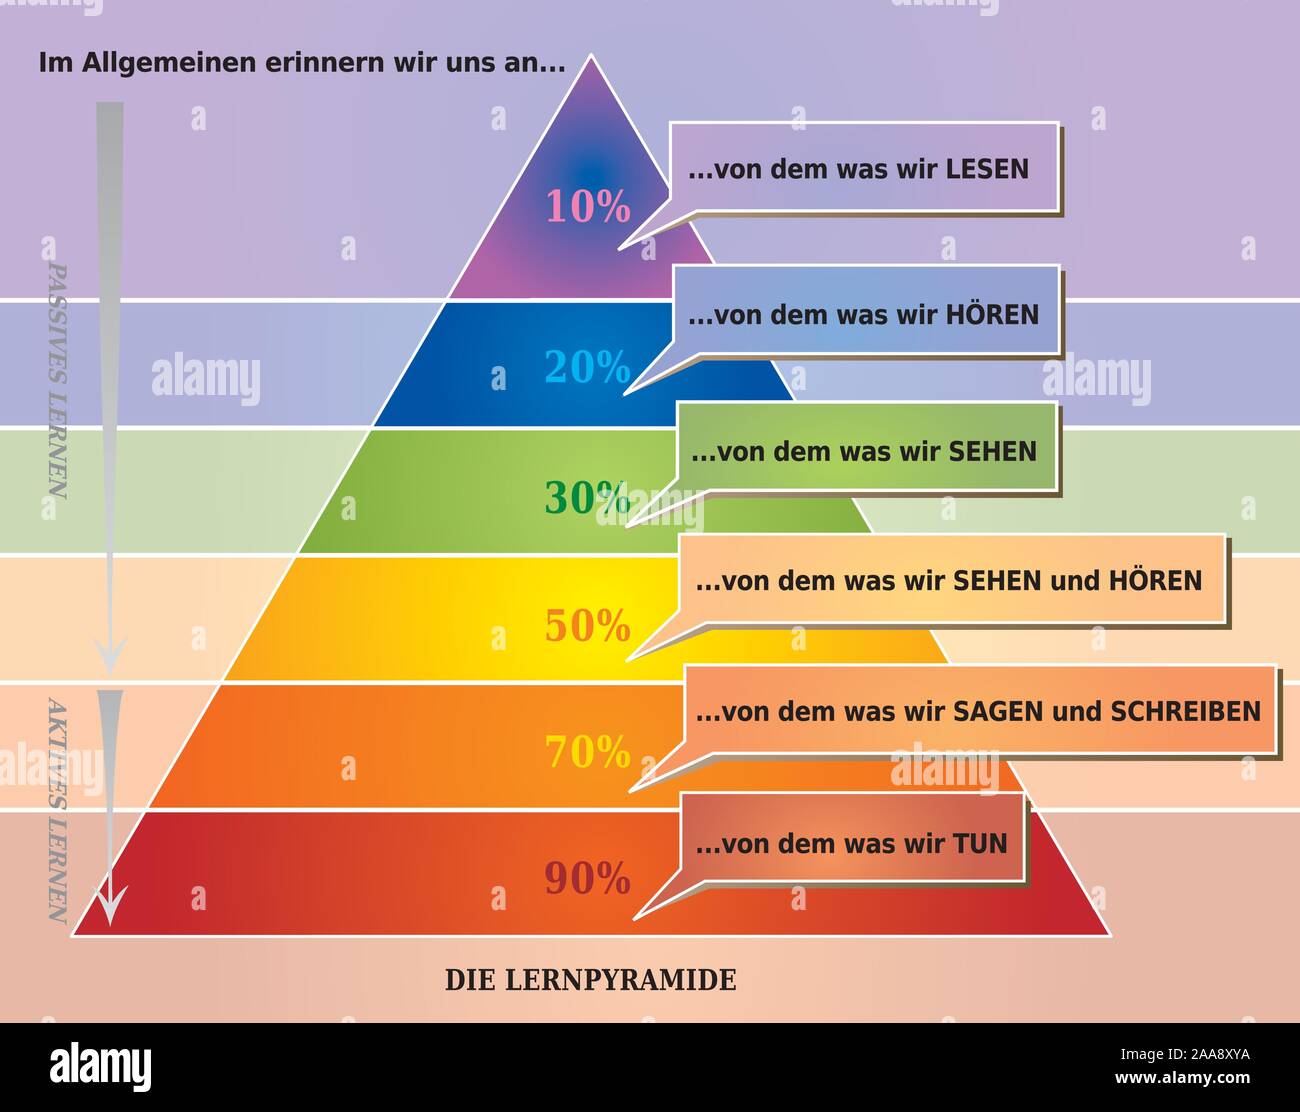 Lernen Pyramide zeigt, was die Menschen denken Sie daran - Deutsche Sprache Stock Vektor